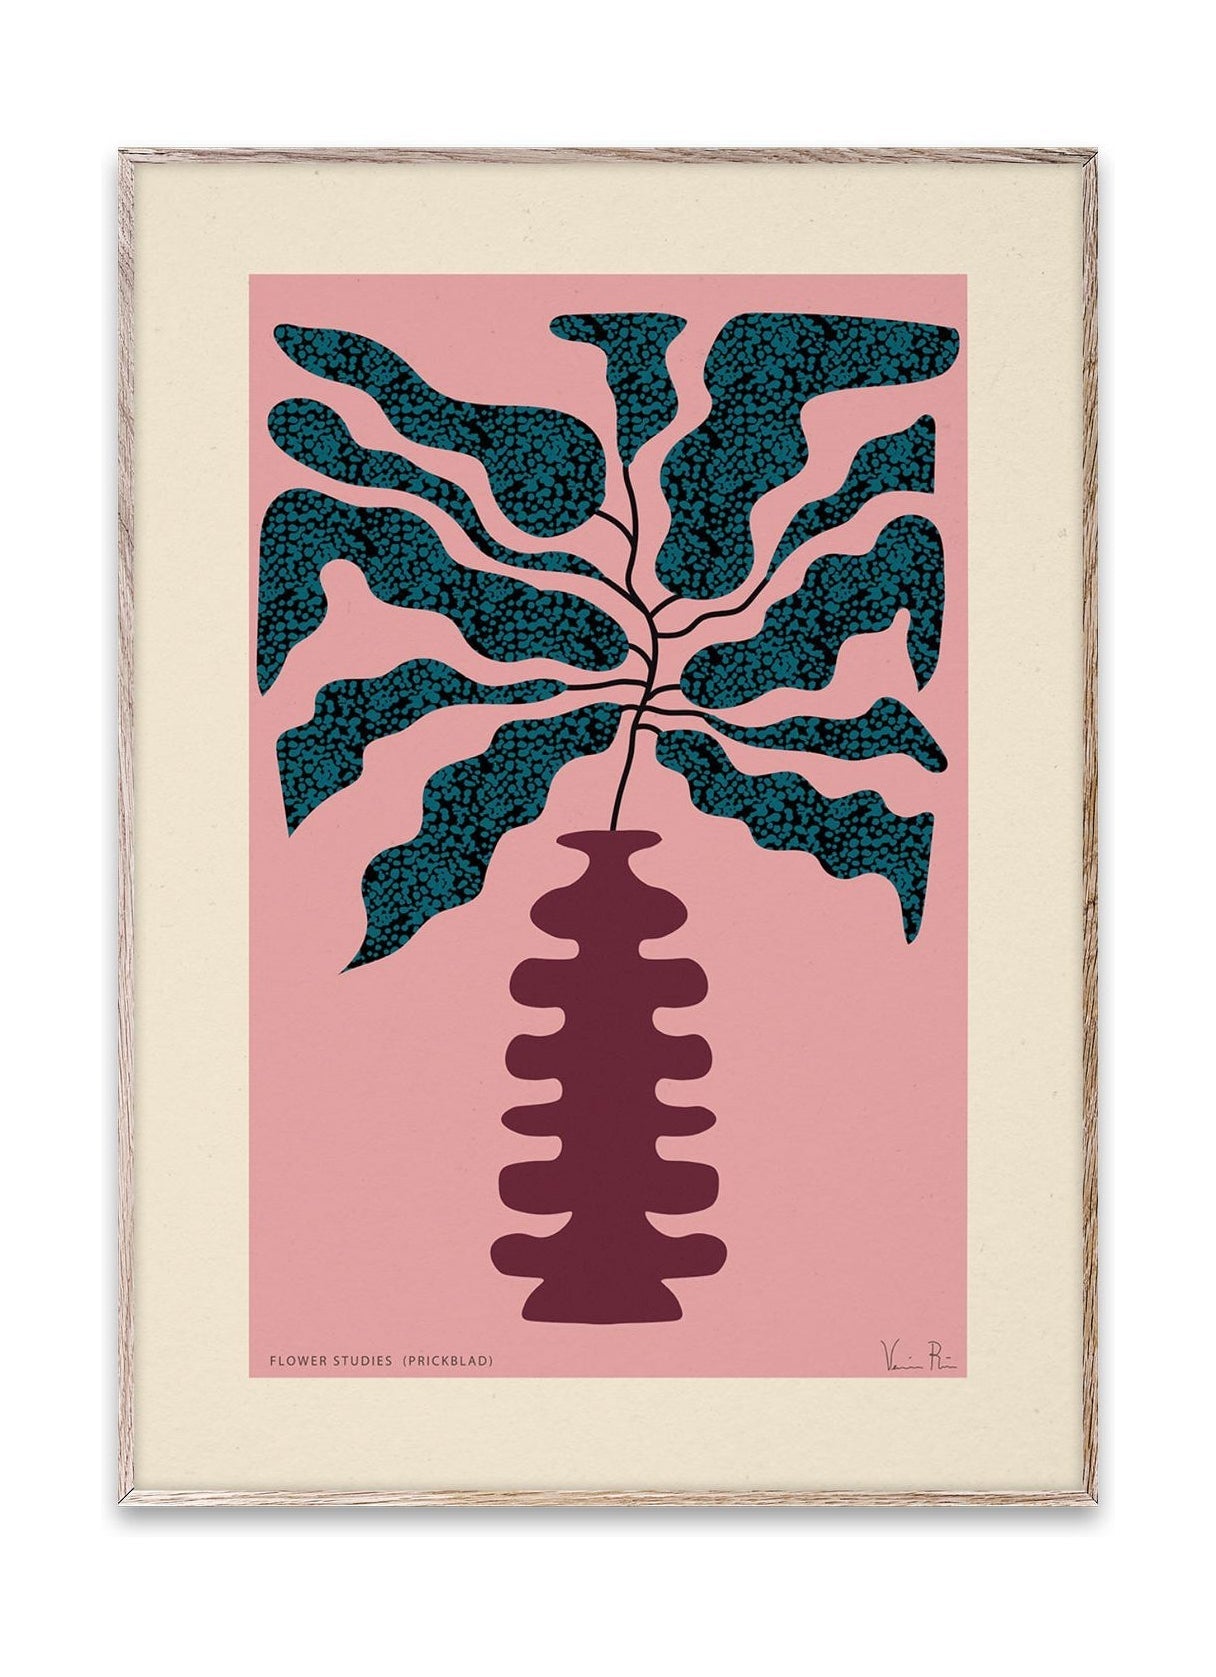 Papierkollektive Blumenstudien 01 (Prickblad) Poster, 50 x 70 cm